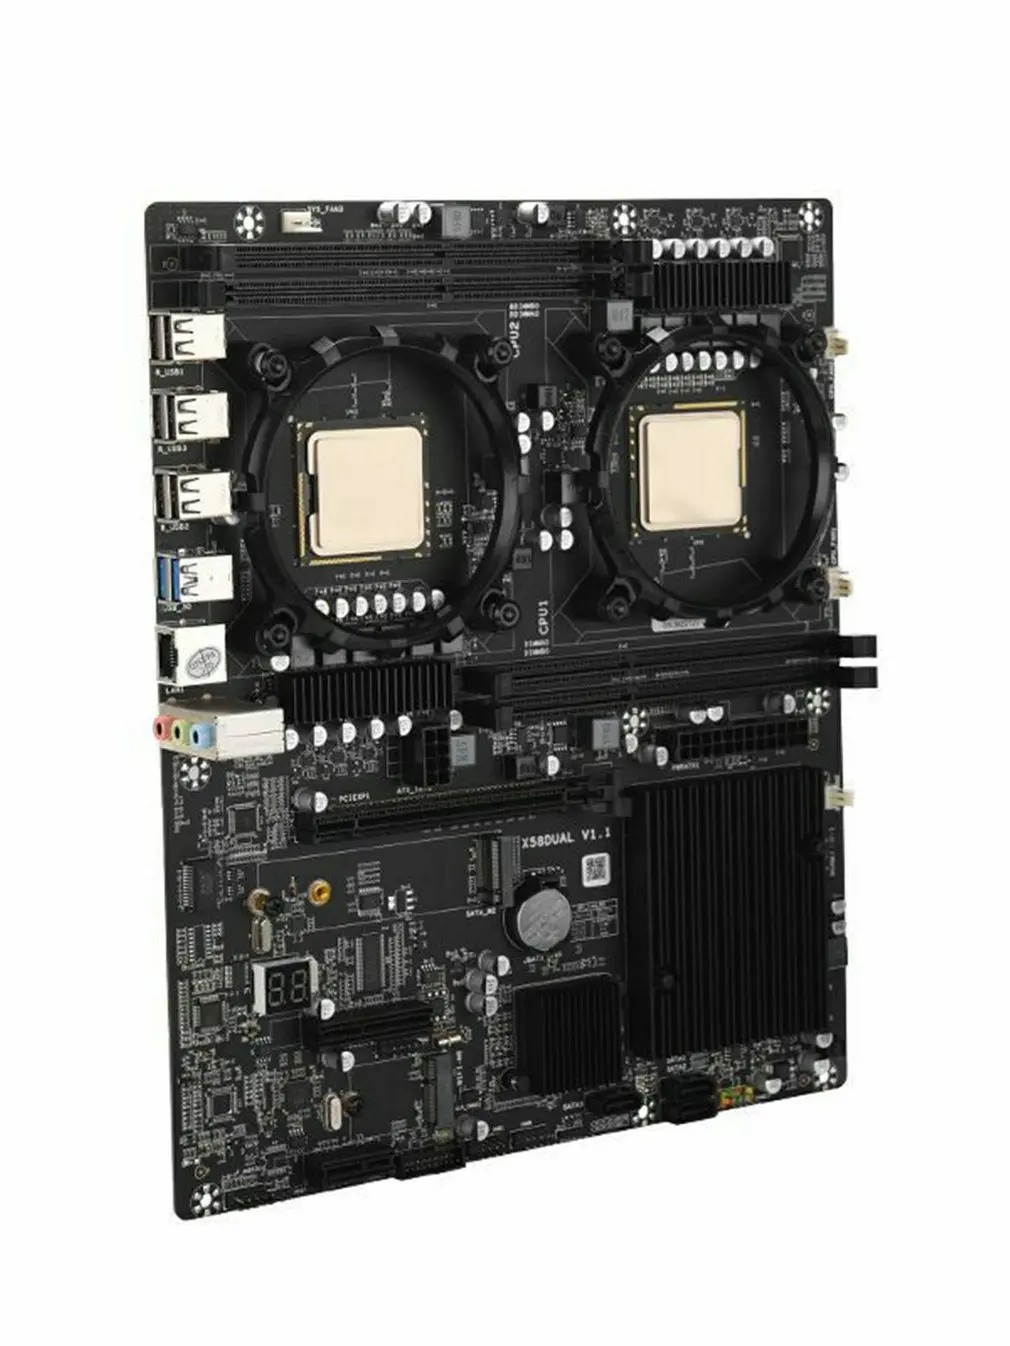 

Материнская плата X58 E-ATX DDR3 ALC662, чип звуковой карты PCIE X16, поддержка SATA 2,0, USB 3,0, интерфейс NVME, USB 3,0, полная скорость ~